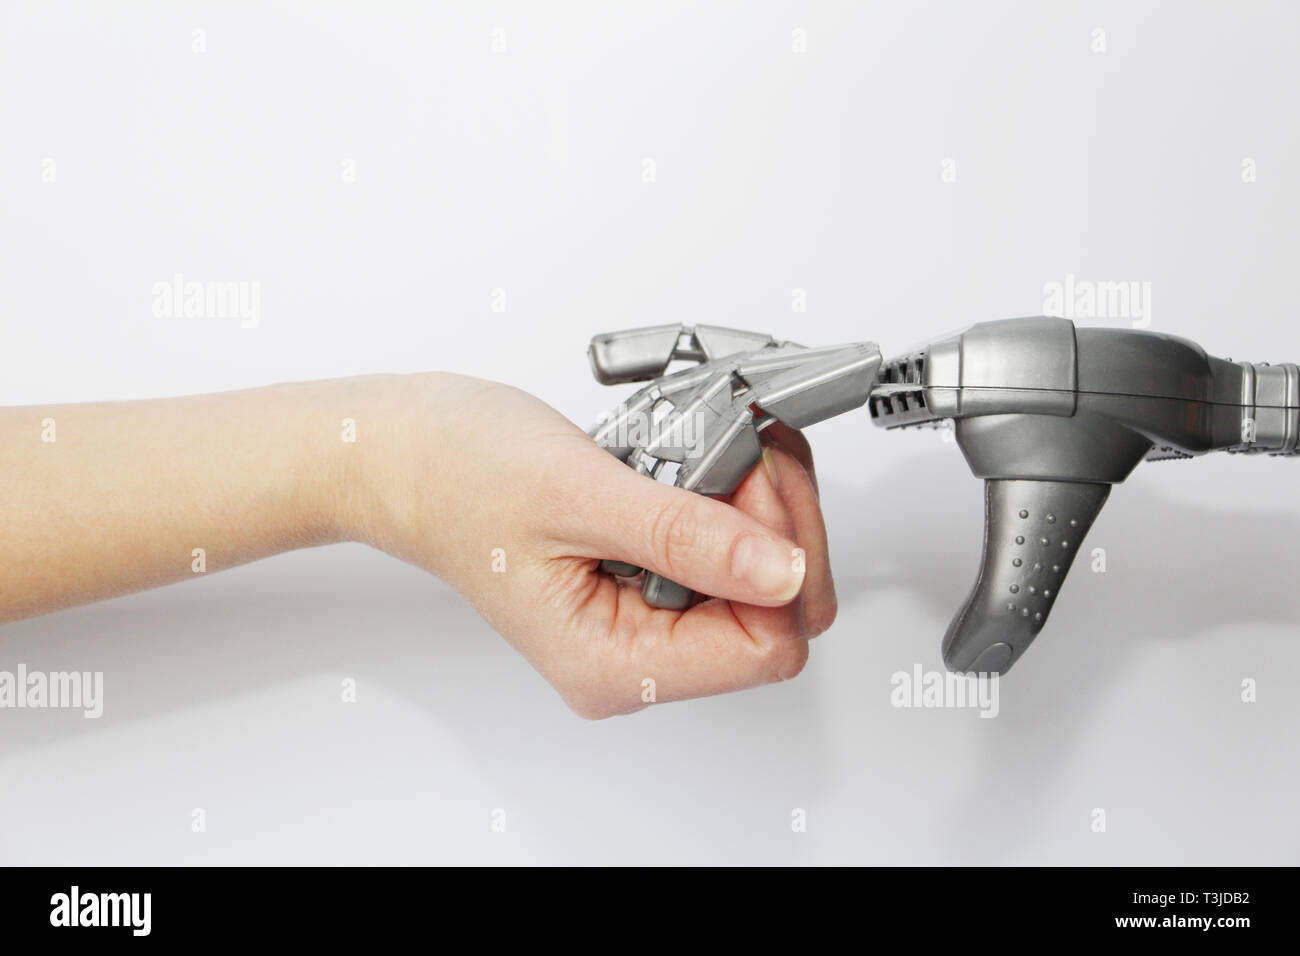 Robot et l'homme. La main d'une personne vivante et la main d'un robot-ensemble. La technologie moderne et de la robotique. Des robots et des personnes à proximité. Concept. Banque D'Images